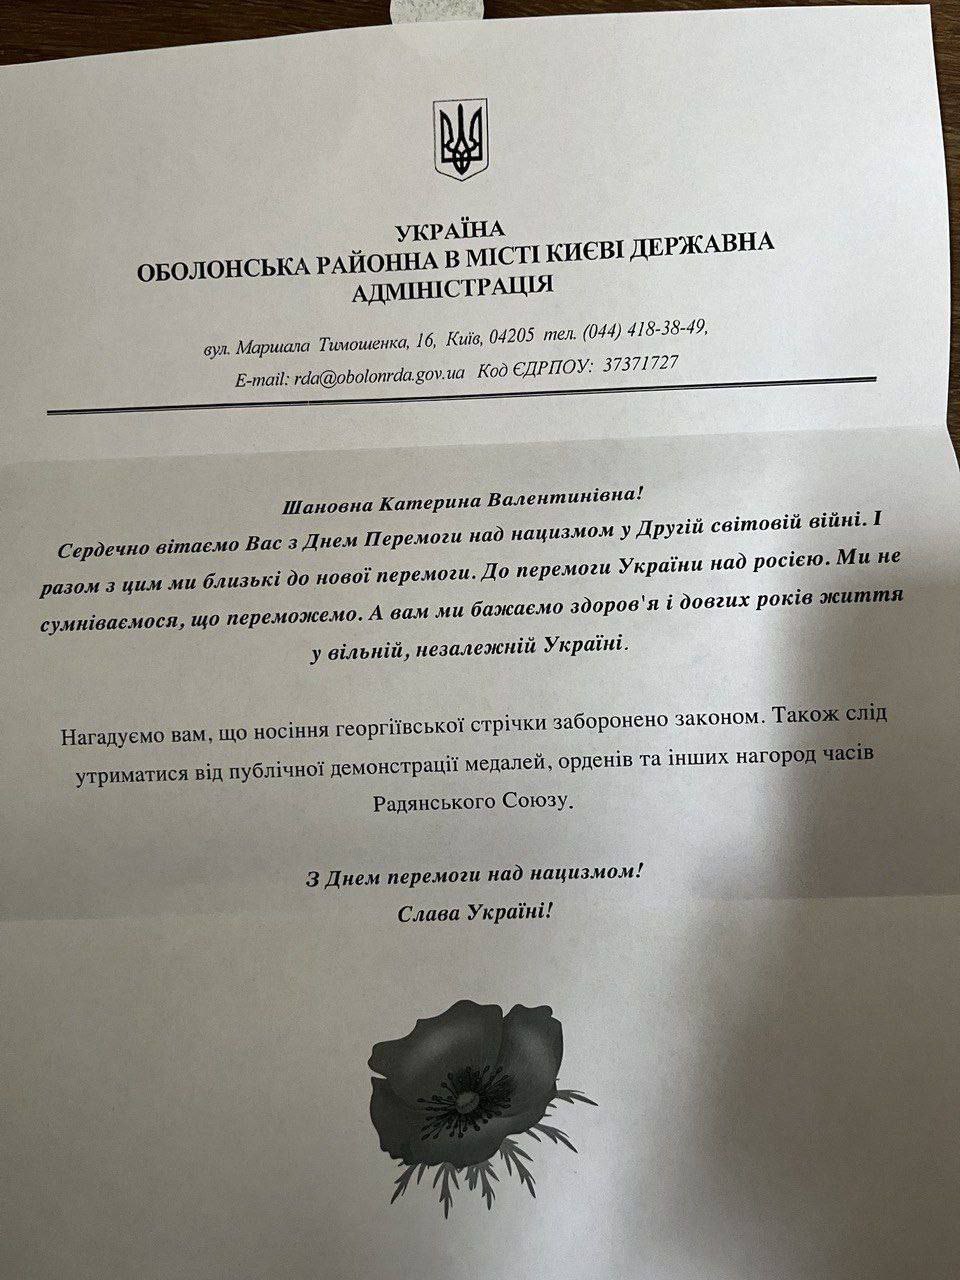 В Киеве ветеранам ВОВ отправили поздравительные письма с поздравлениями и одновременно угрозами.